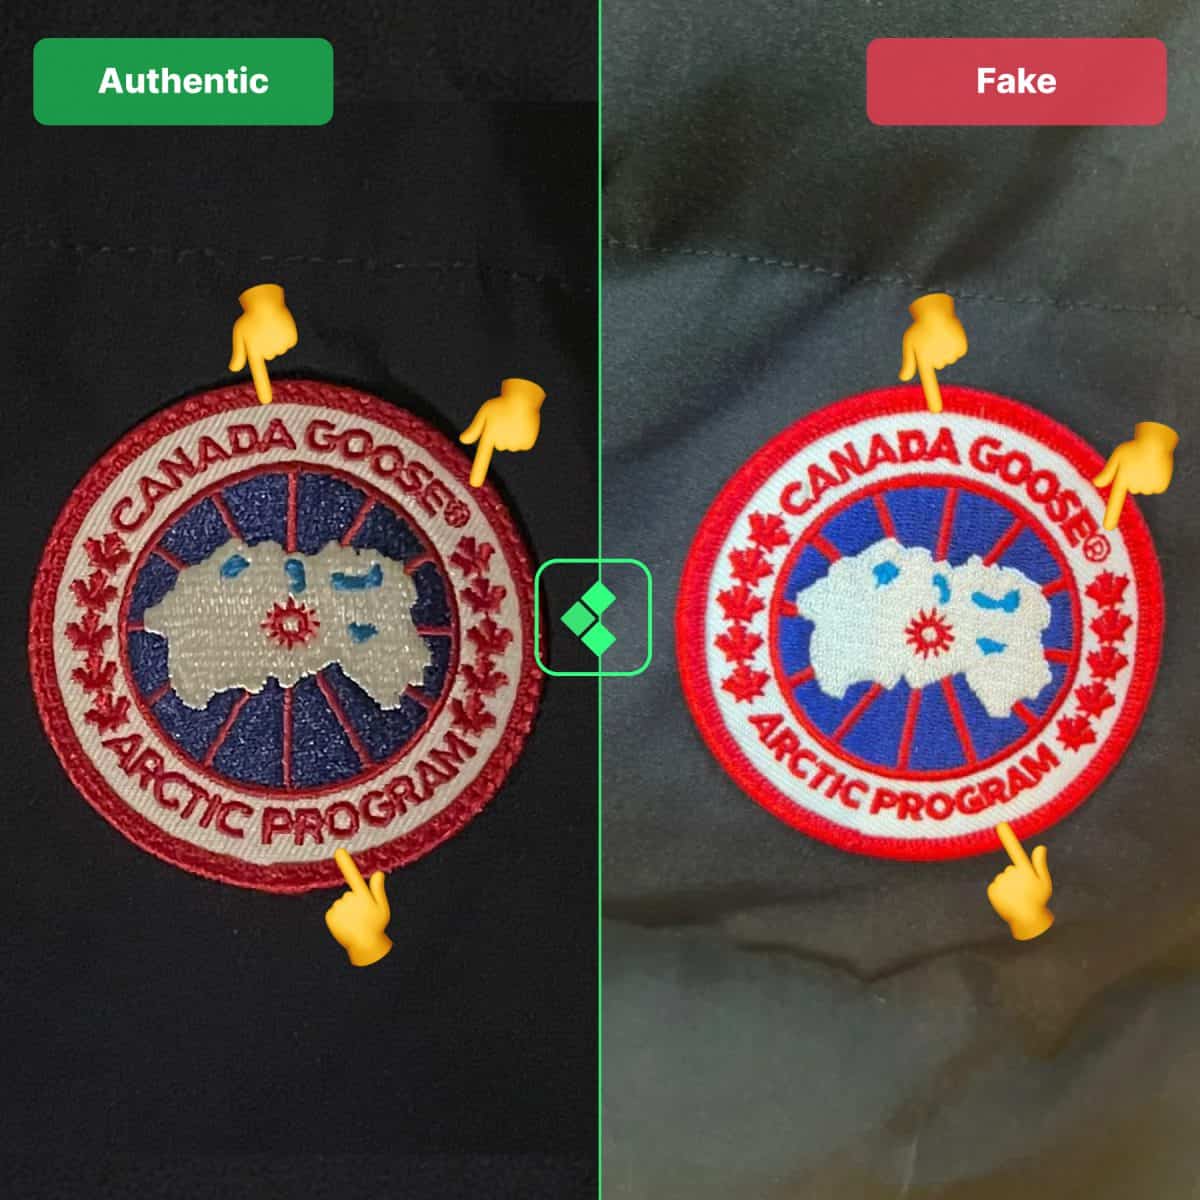 Canada Goose Jacket - Badge Real Vs Fake